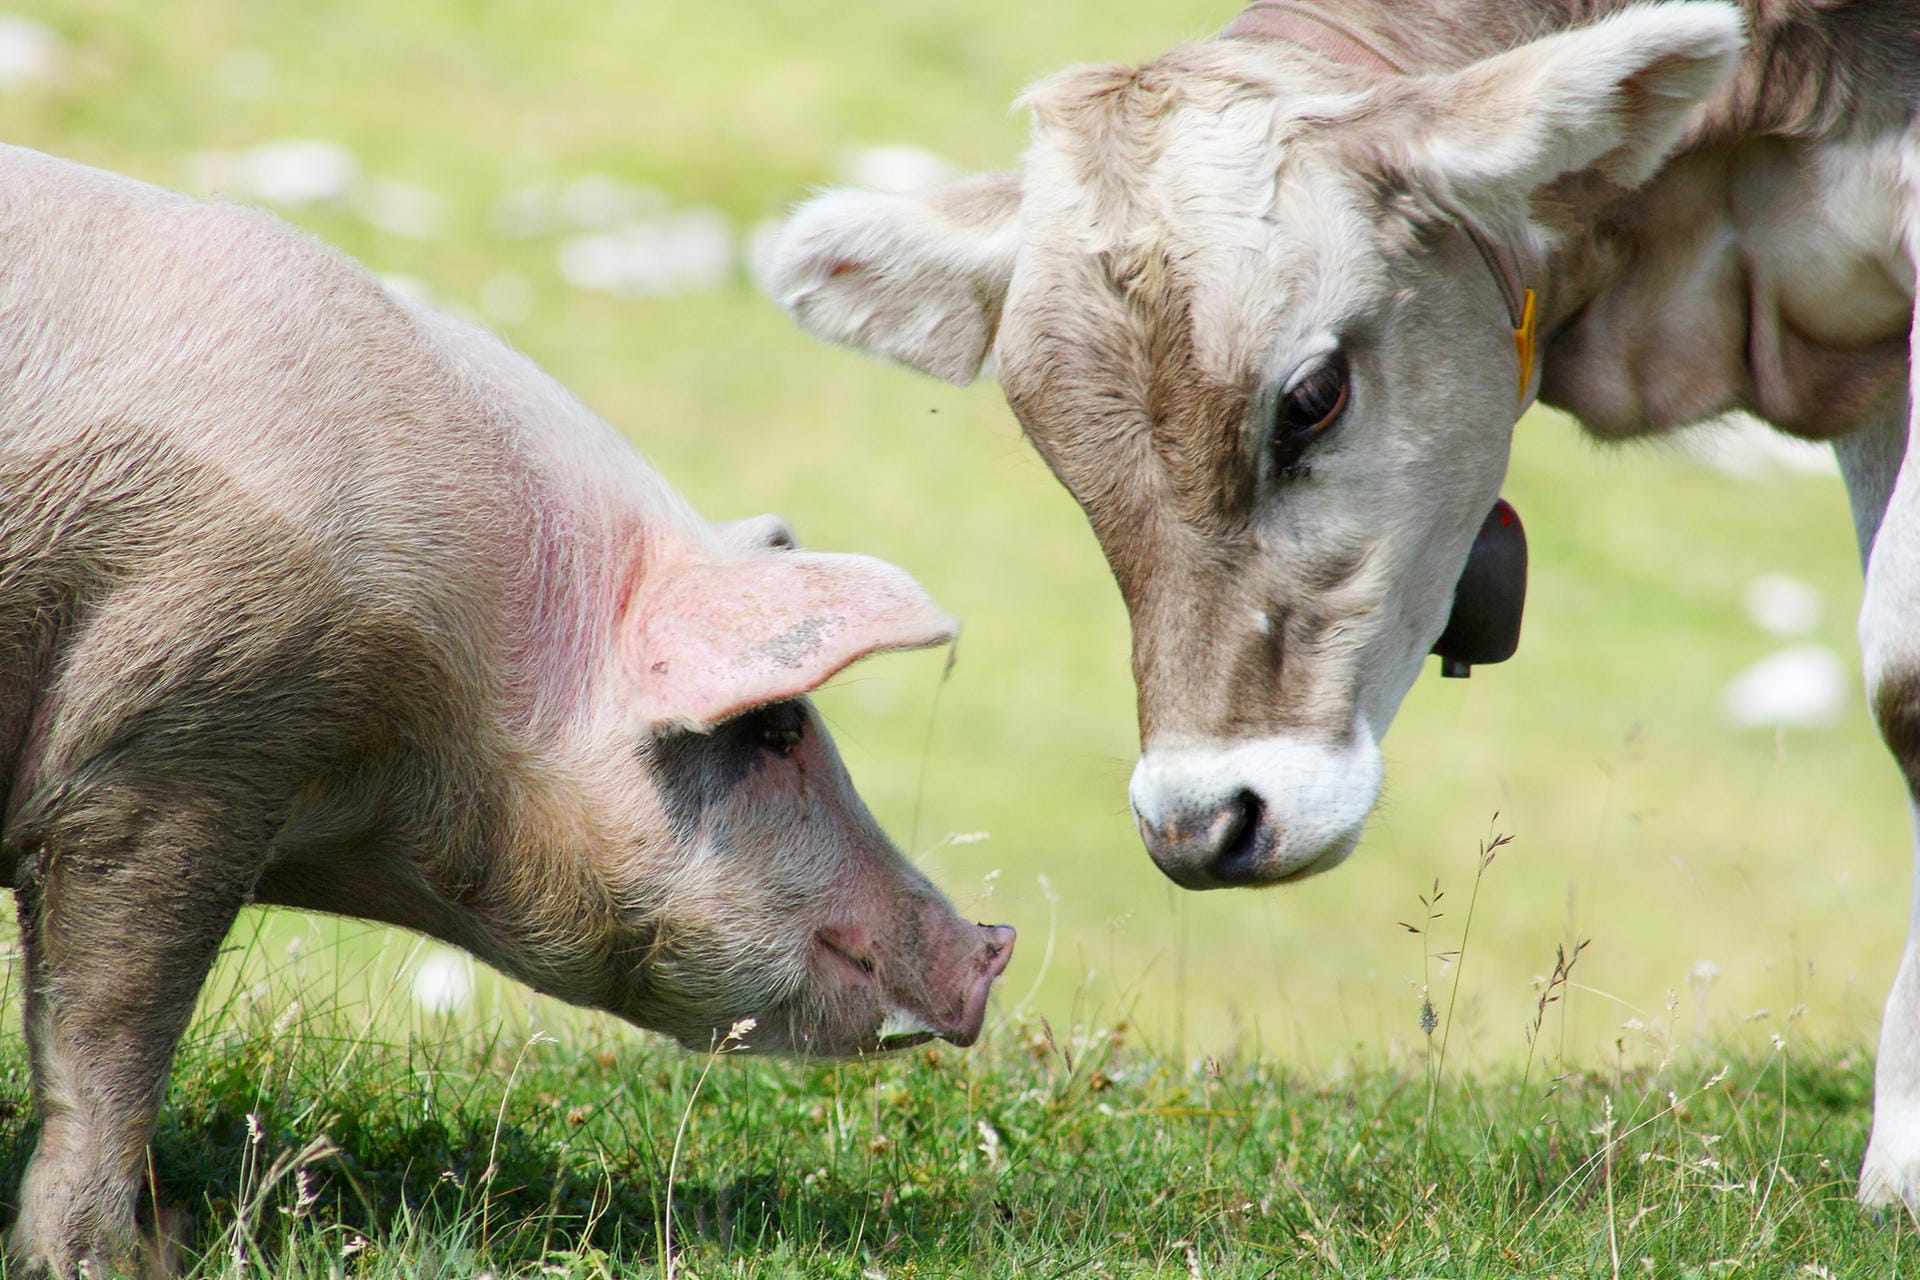 Bei Kollagen und Elastin handelt es sich um Proteine. Sie werden meist aus Haut und Sehnen von Schweinen und Rindern extrahiert. Aufgrund ihrer straffenden Wirkung finden sie in Anti-Aging-Cremes häufig Verwendung.